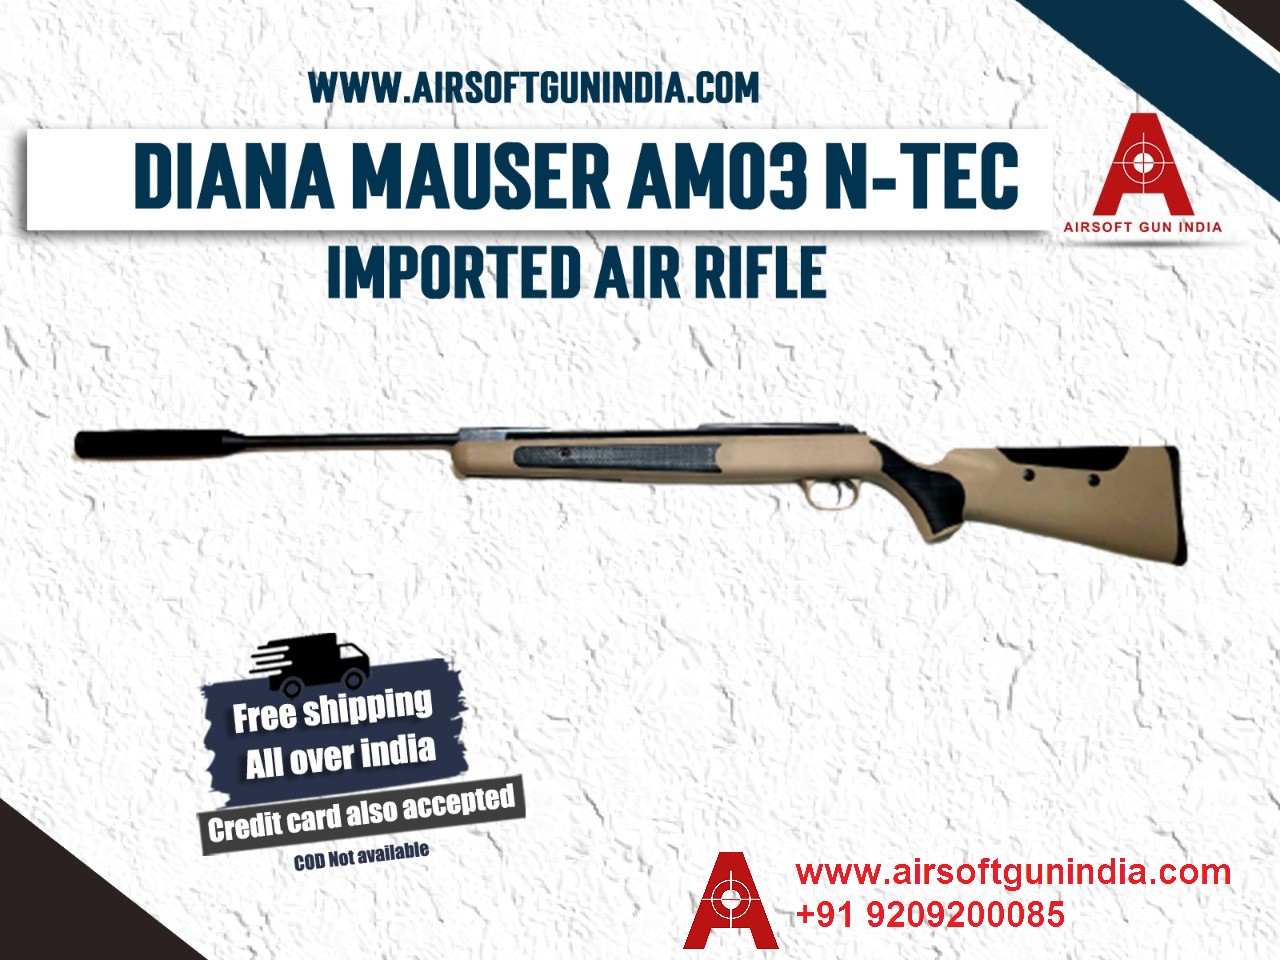 Diana Mauser AM03 N-TEC Air Rifle By Airsoft Gun India